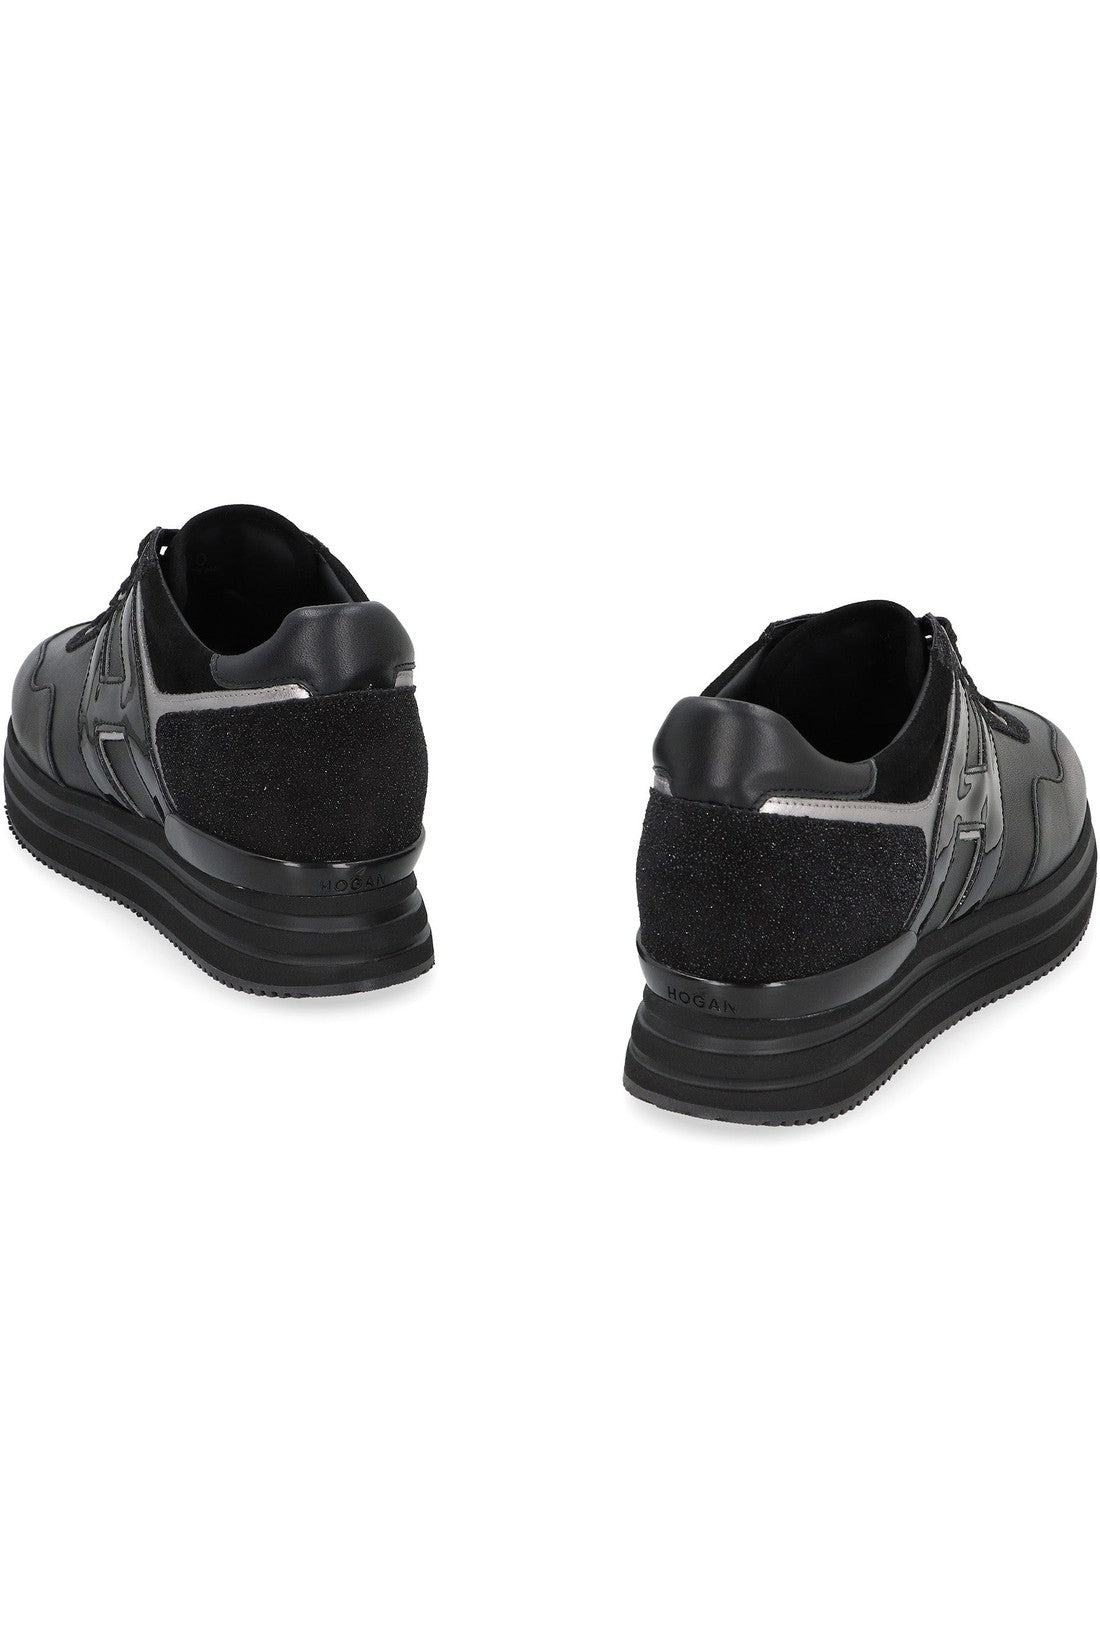 Hogan-OUTLET-SALE-Hogan Midi H222 low-top sneakers-ARCHIVIST